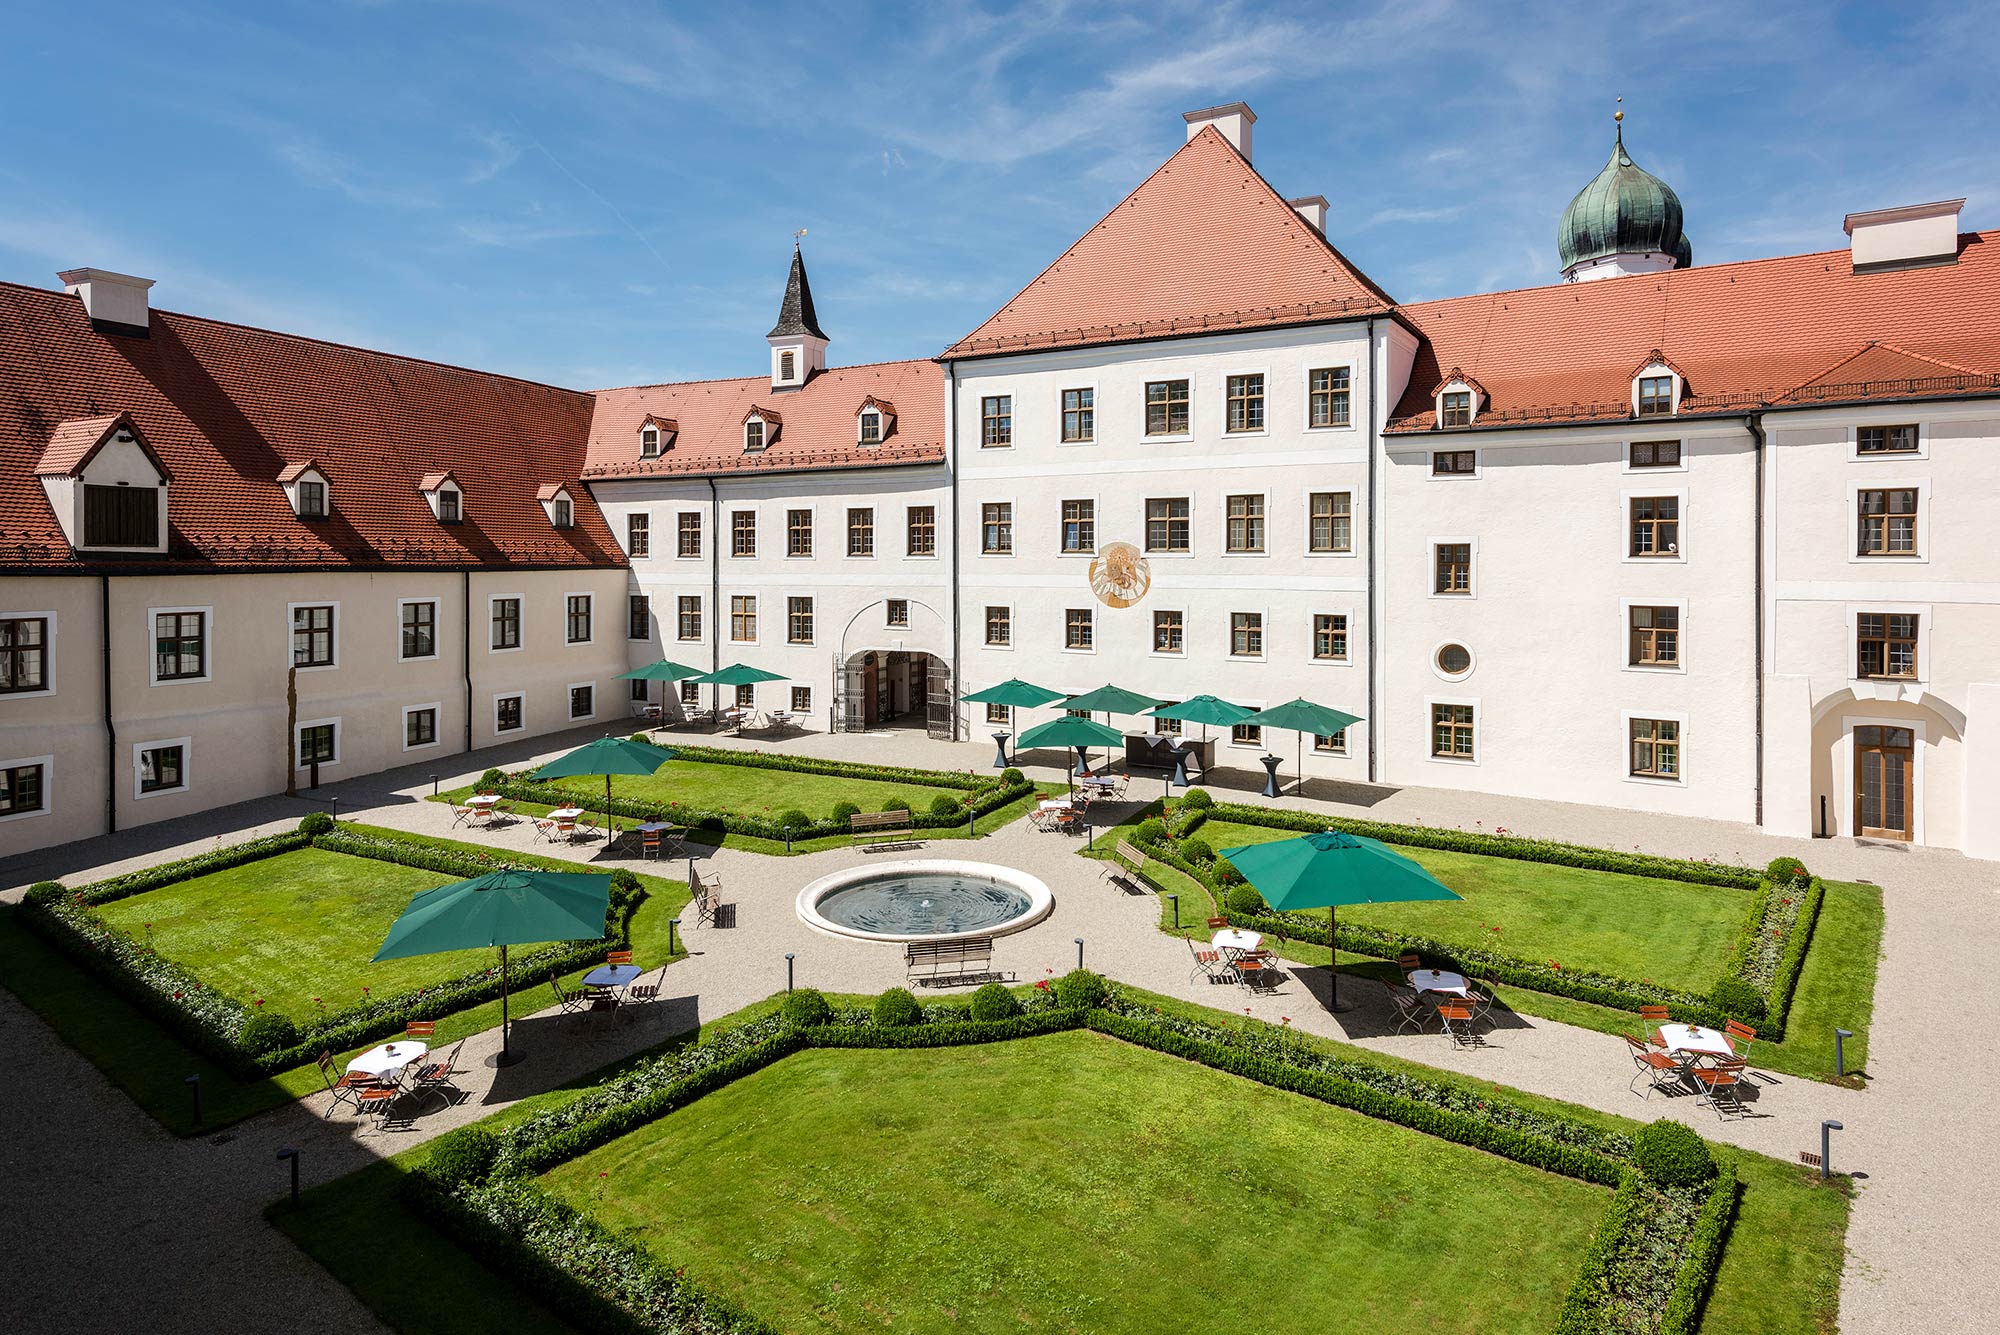 Innenhof von Kloster Seeon